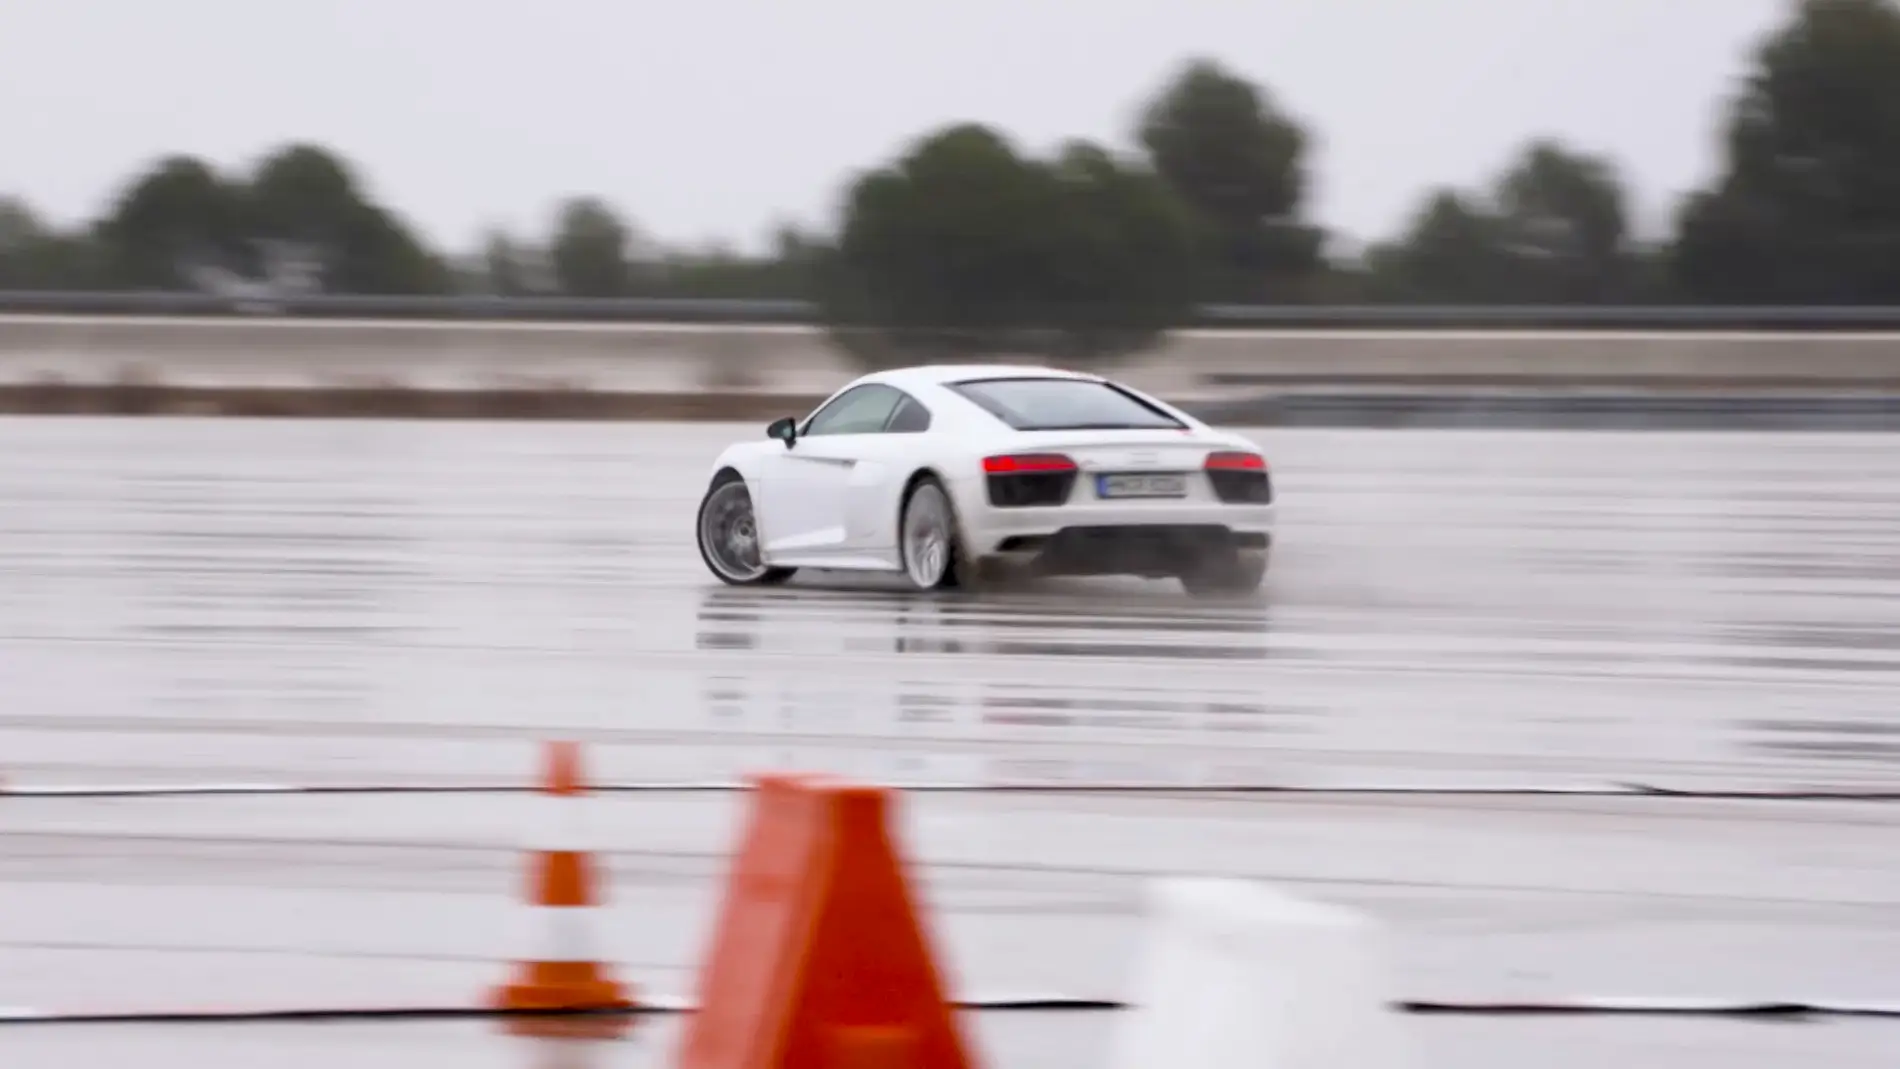 Probamos el nuevo Audi R8 RWS, el primero de la saga a propulsión: Adrenalina y conducción 'pura' - Centímetros Cúbicos